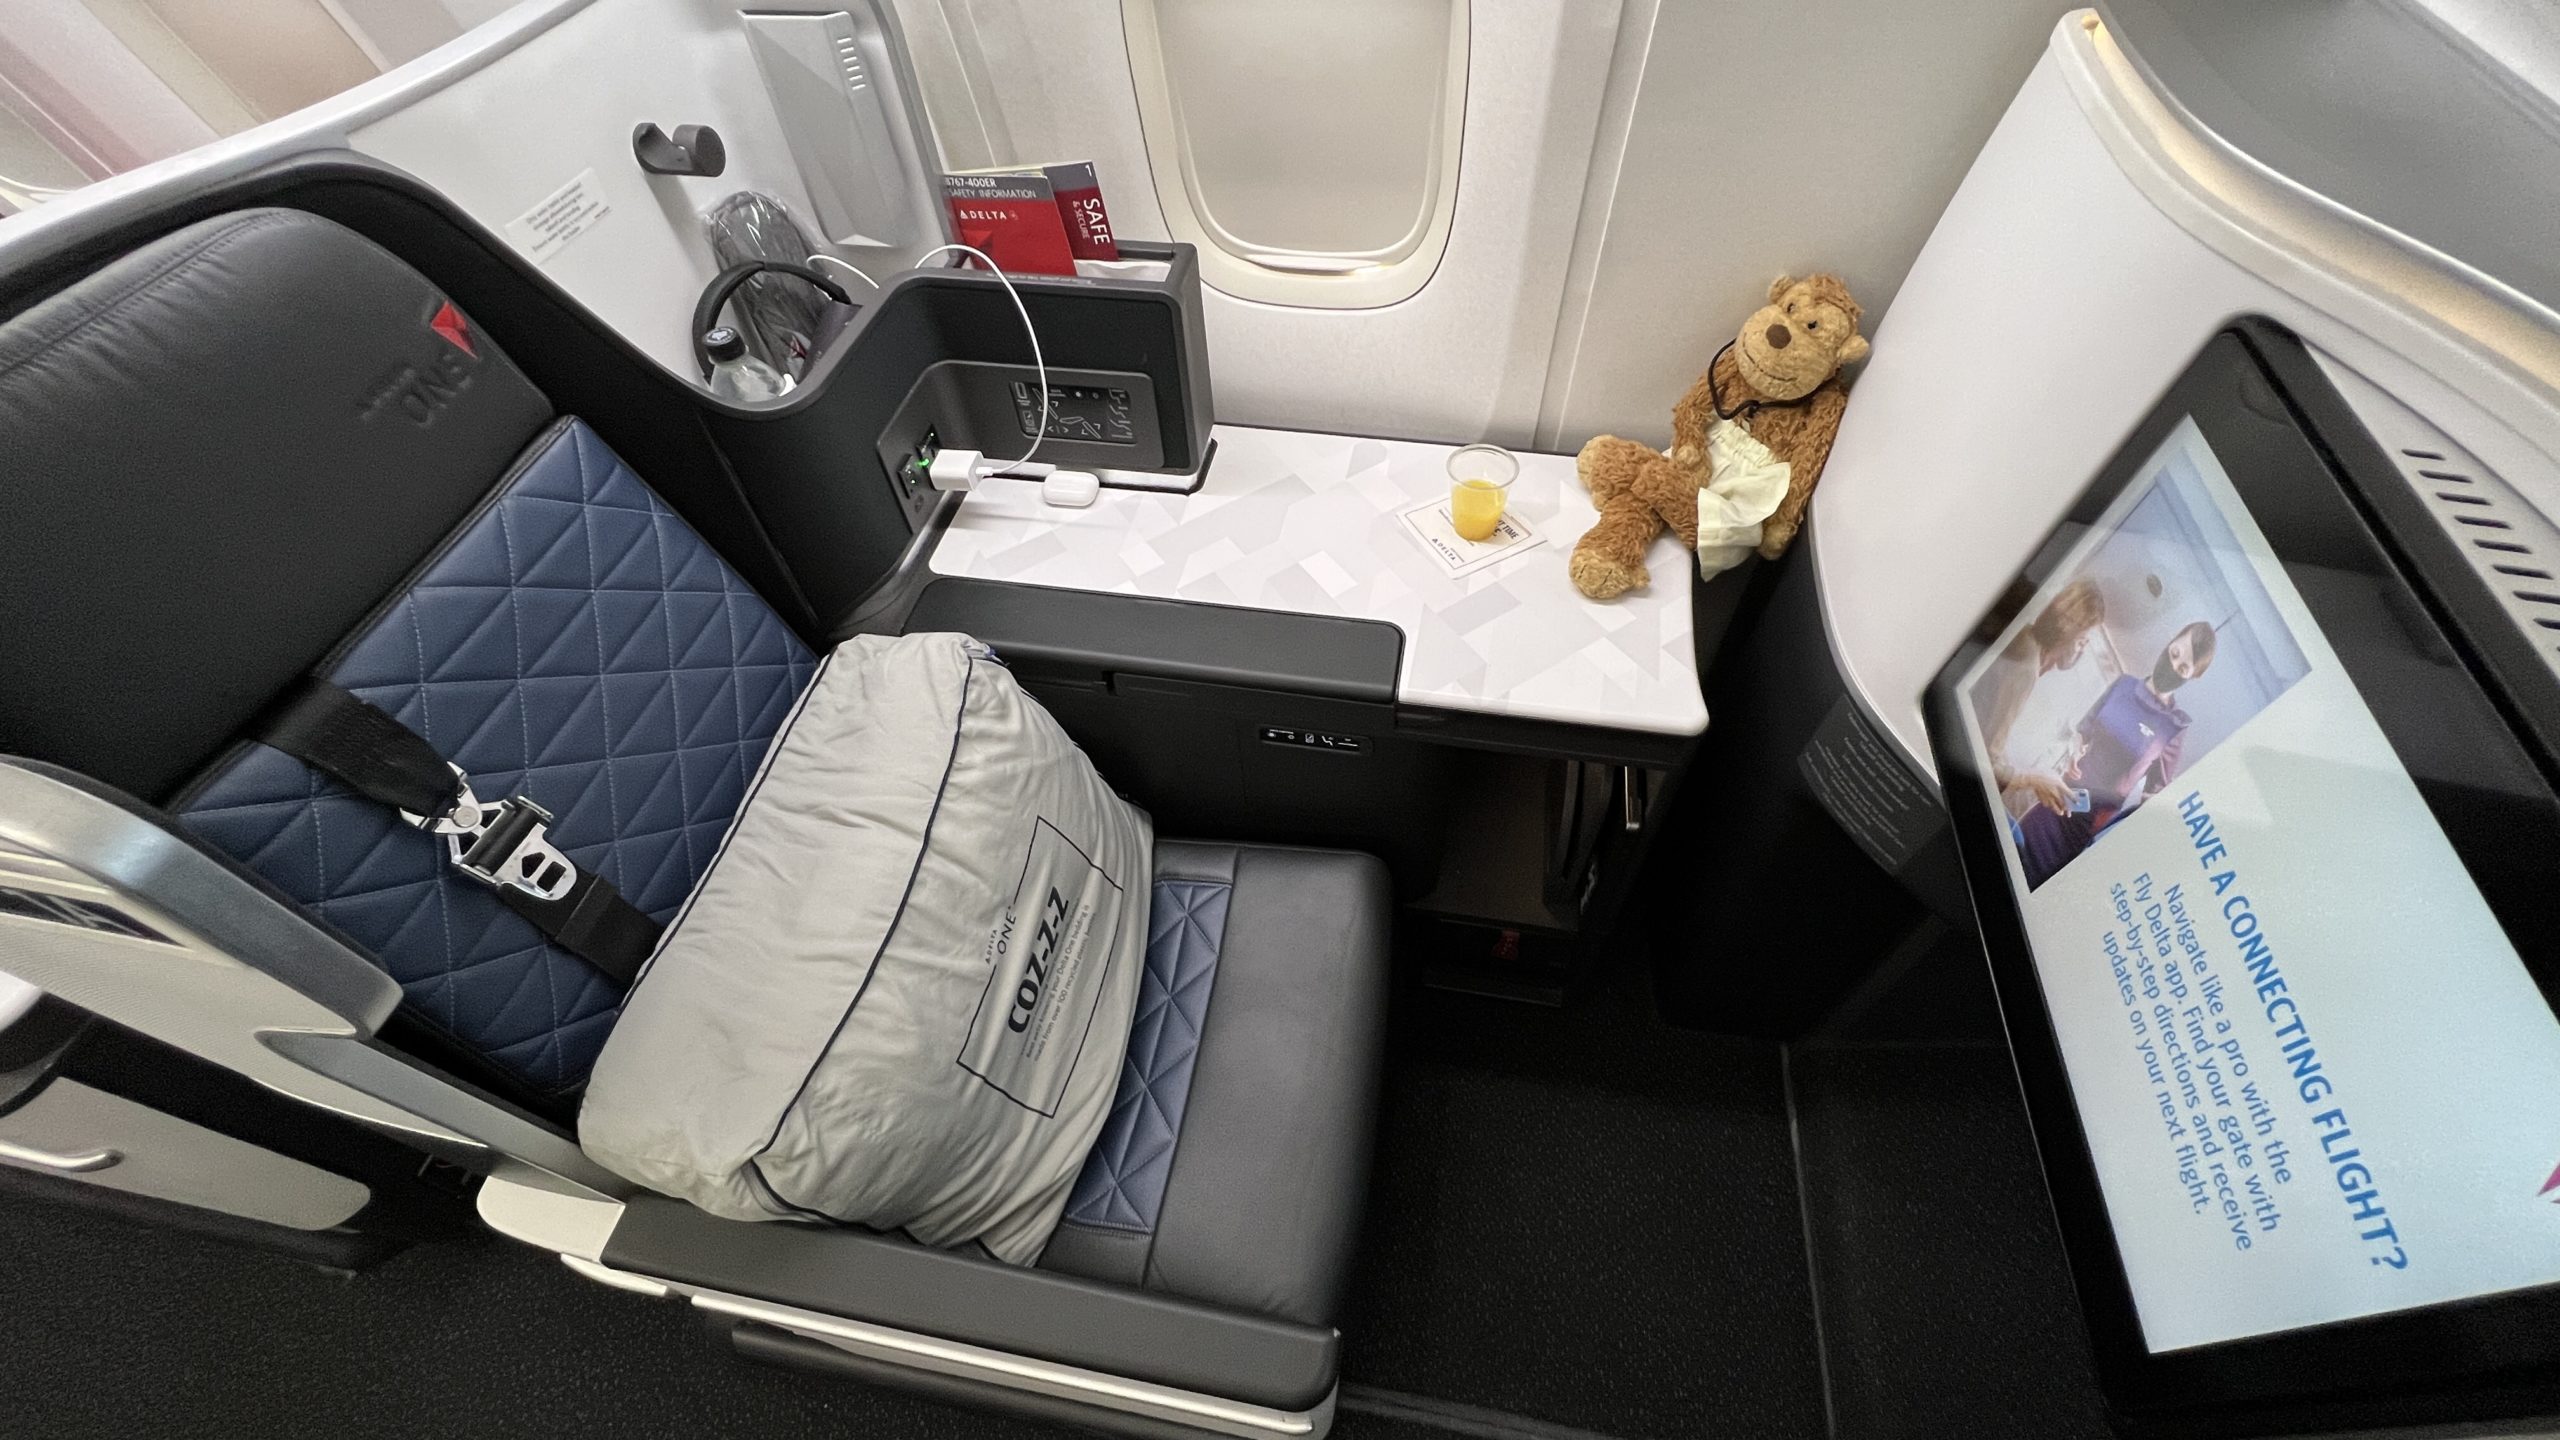 a teddy bear on a table in an airplane